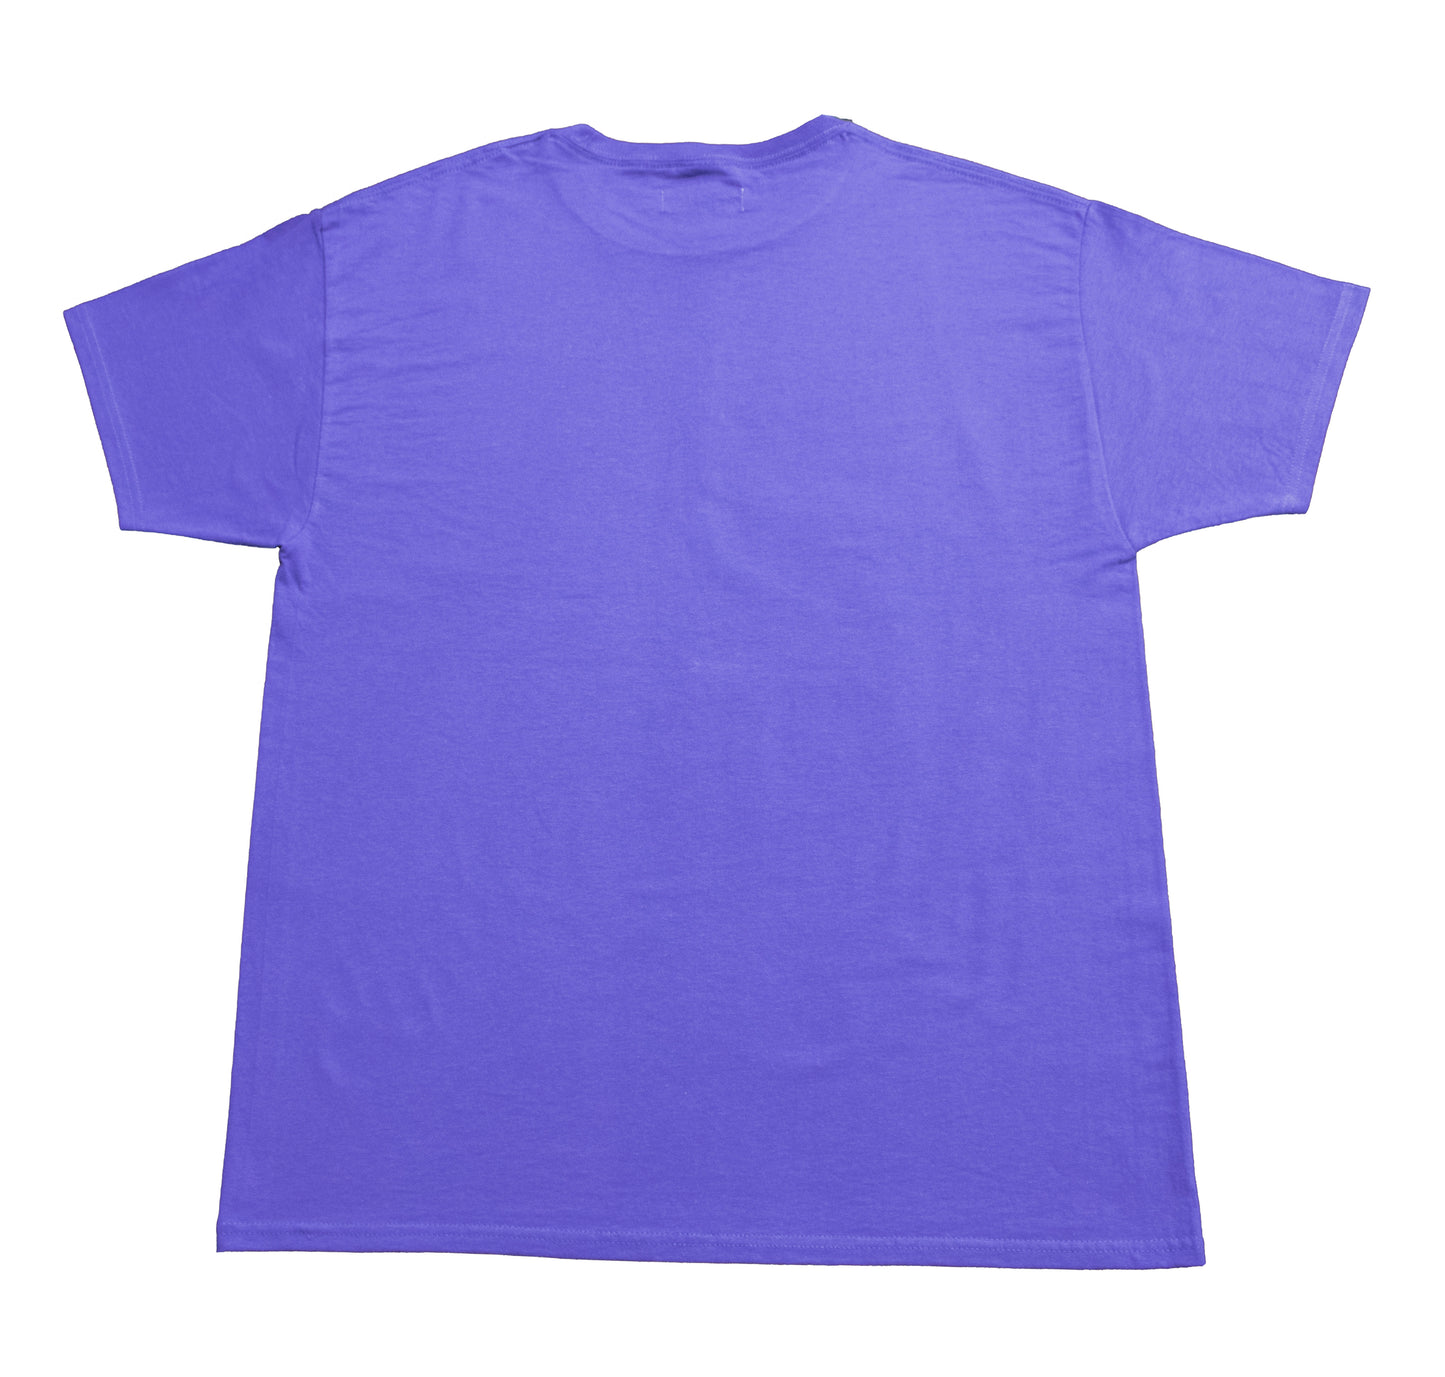 Hecho Shirt Purple